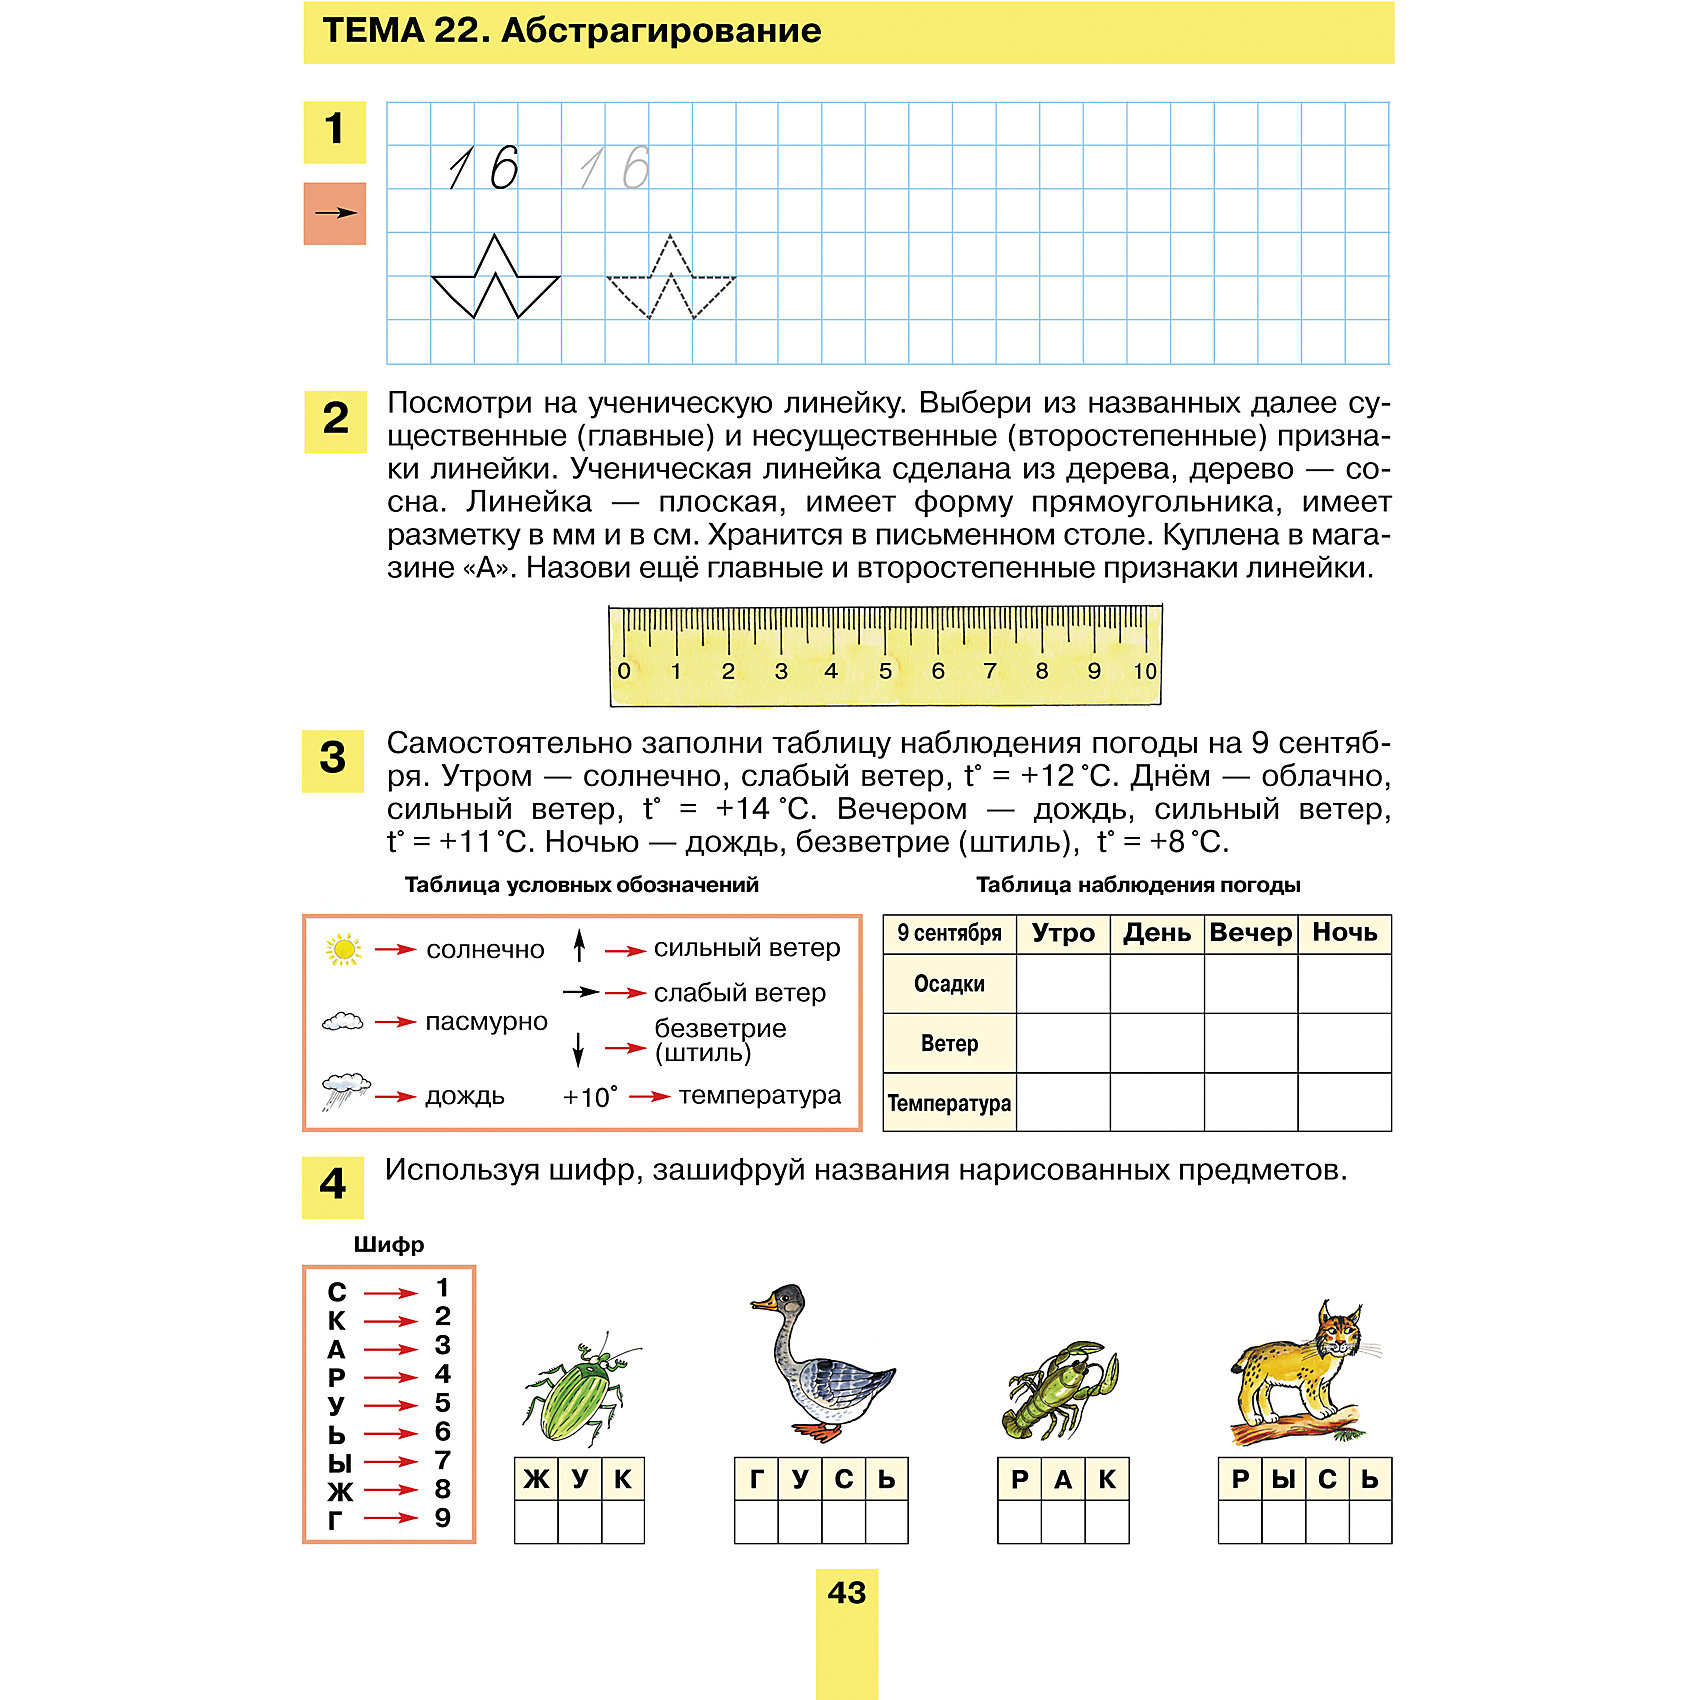 фото Рабочая тетрадь для детей 6-7 лет "развитие математических способностей у дошкольников", шевелев к. бином